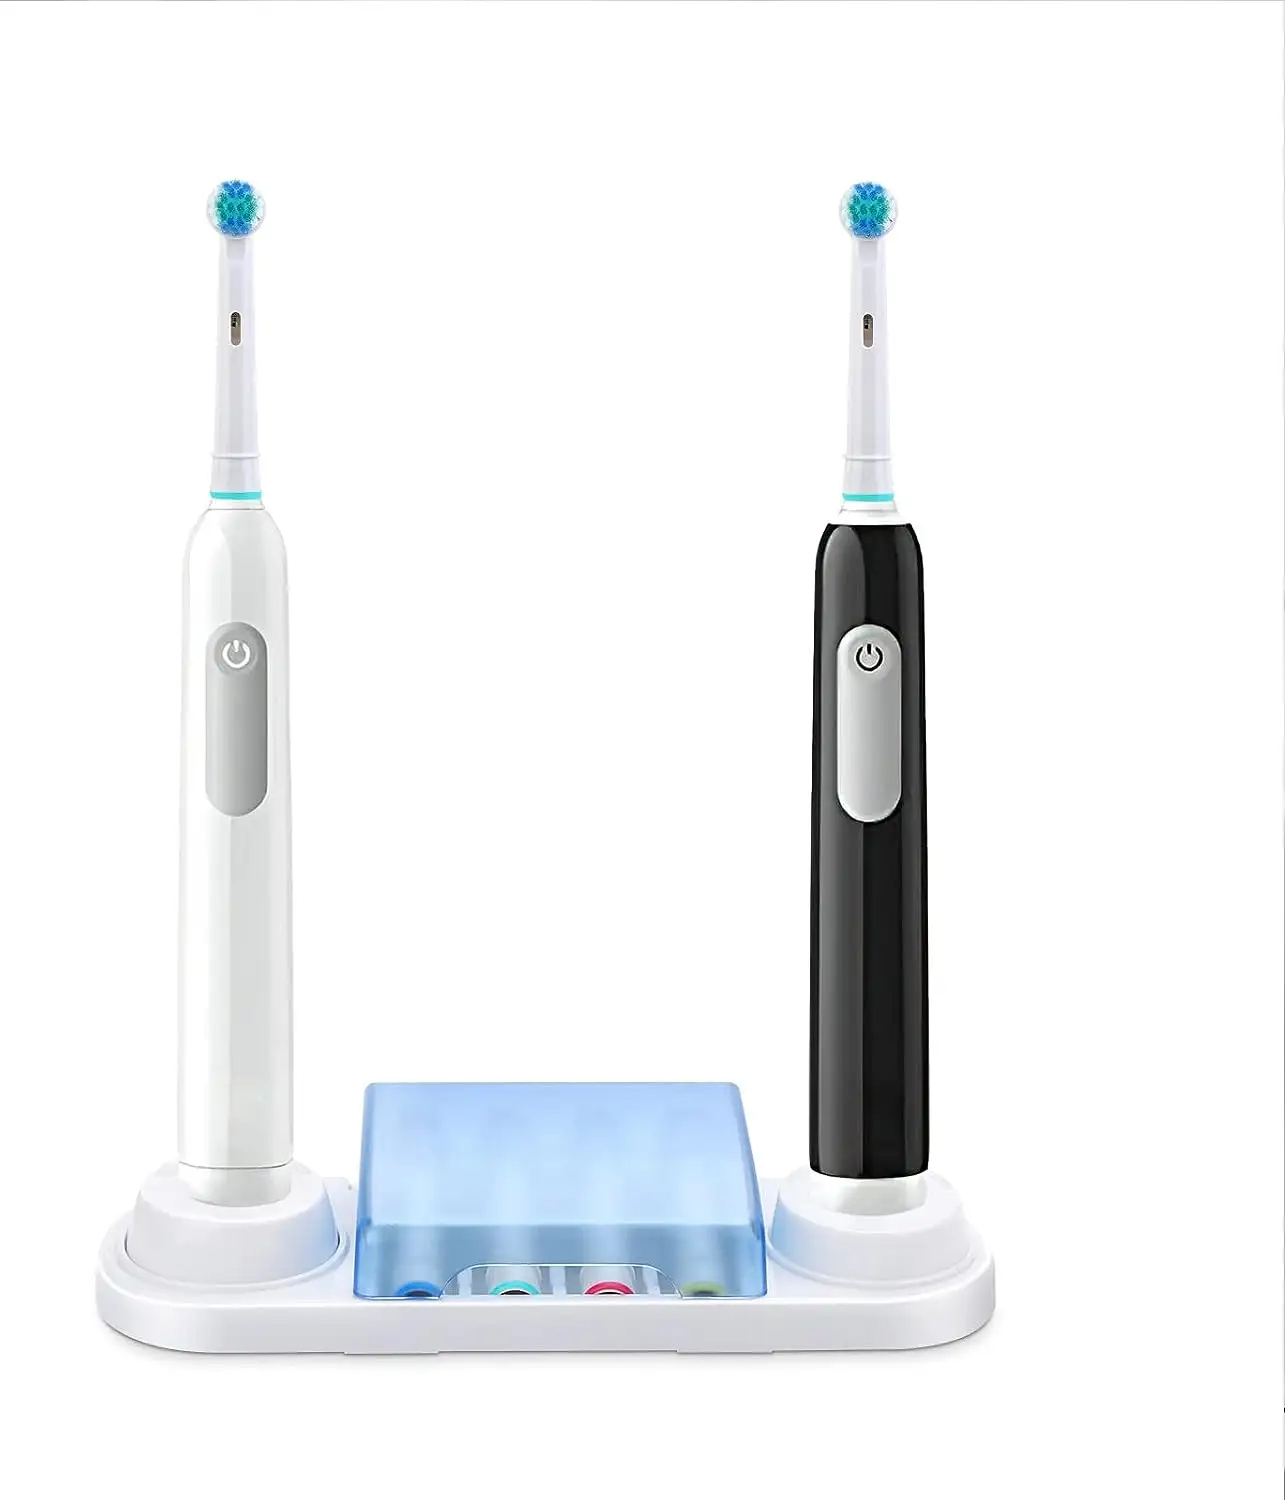 Soporte para cepillos de dientes eléctricos EBH01, soporte para cepillos de dientes eléctricos, cubierta para cabezales